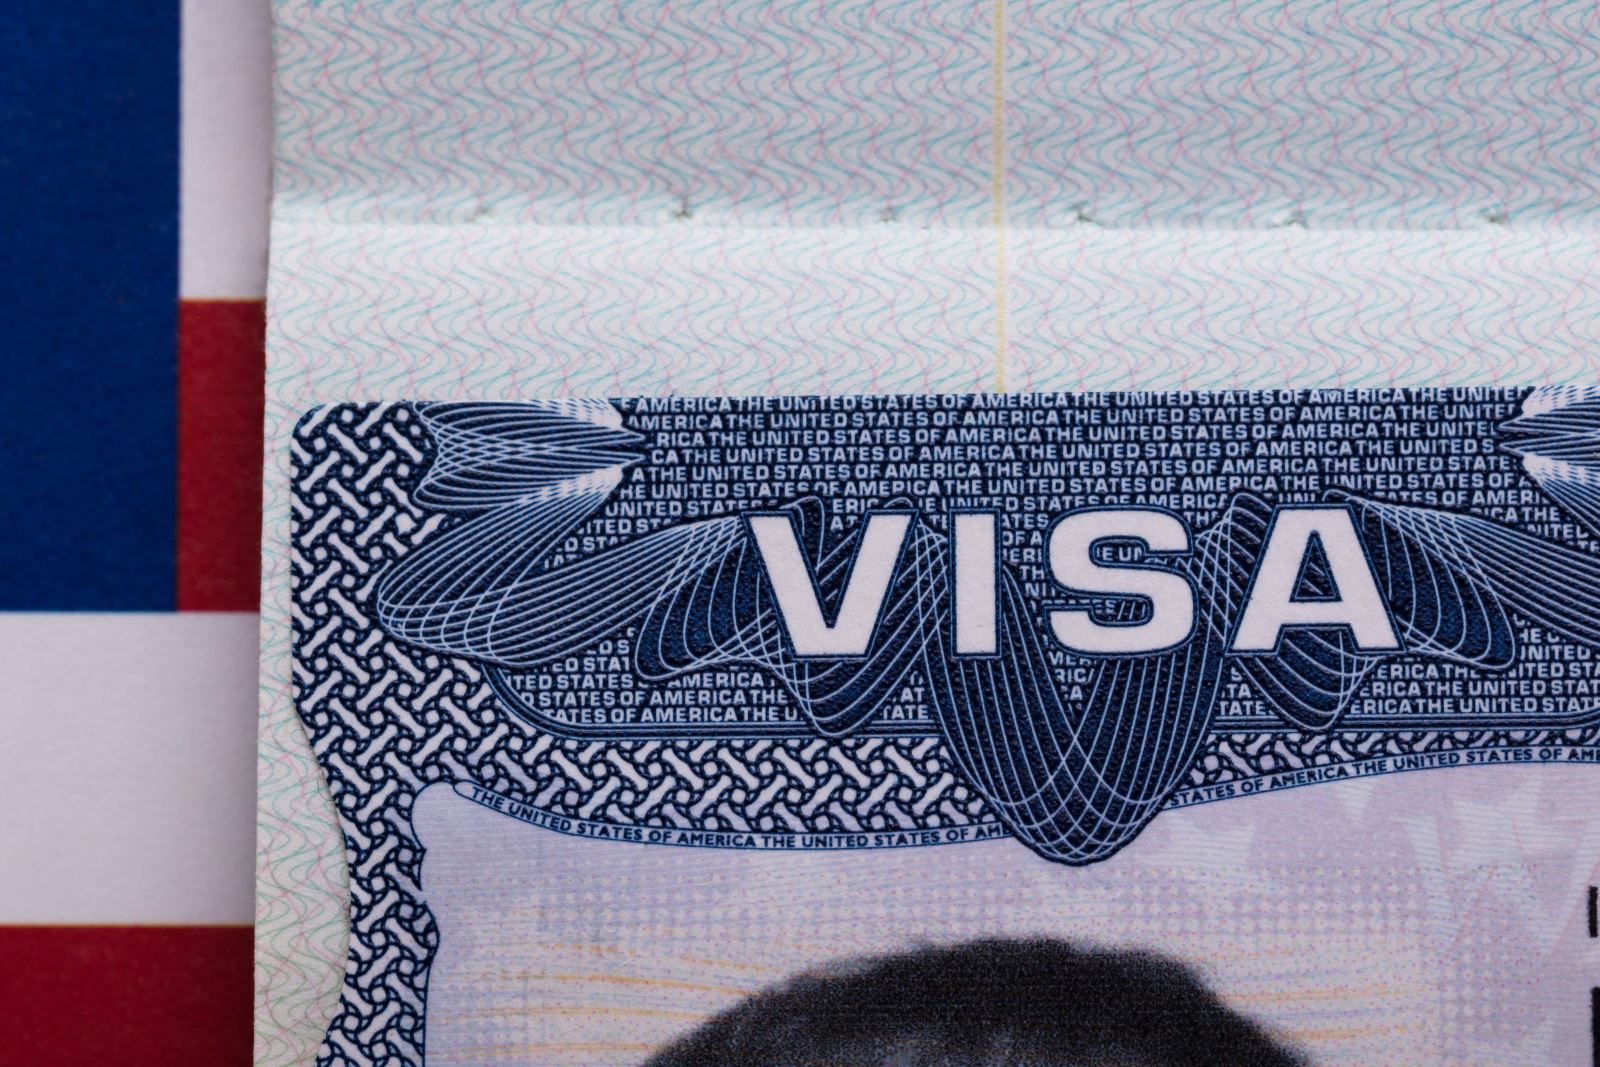 e-1 treaty trader visa